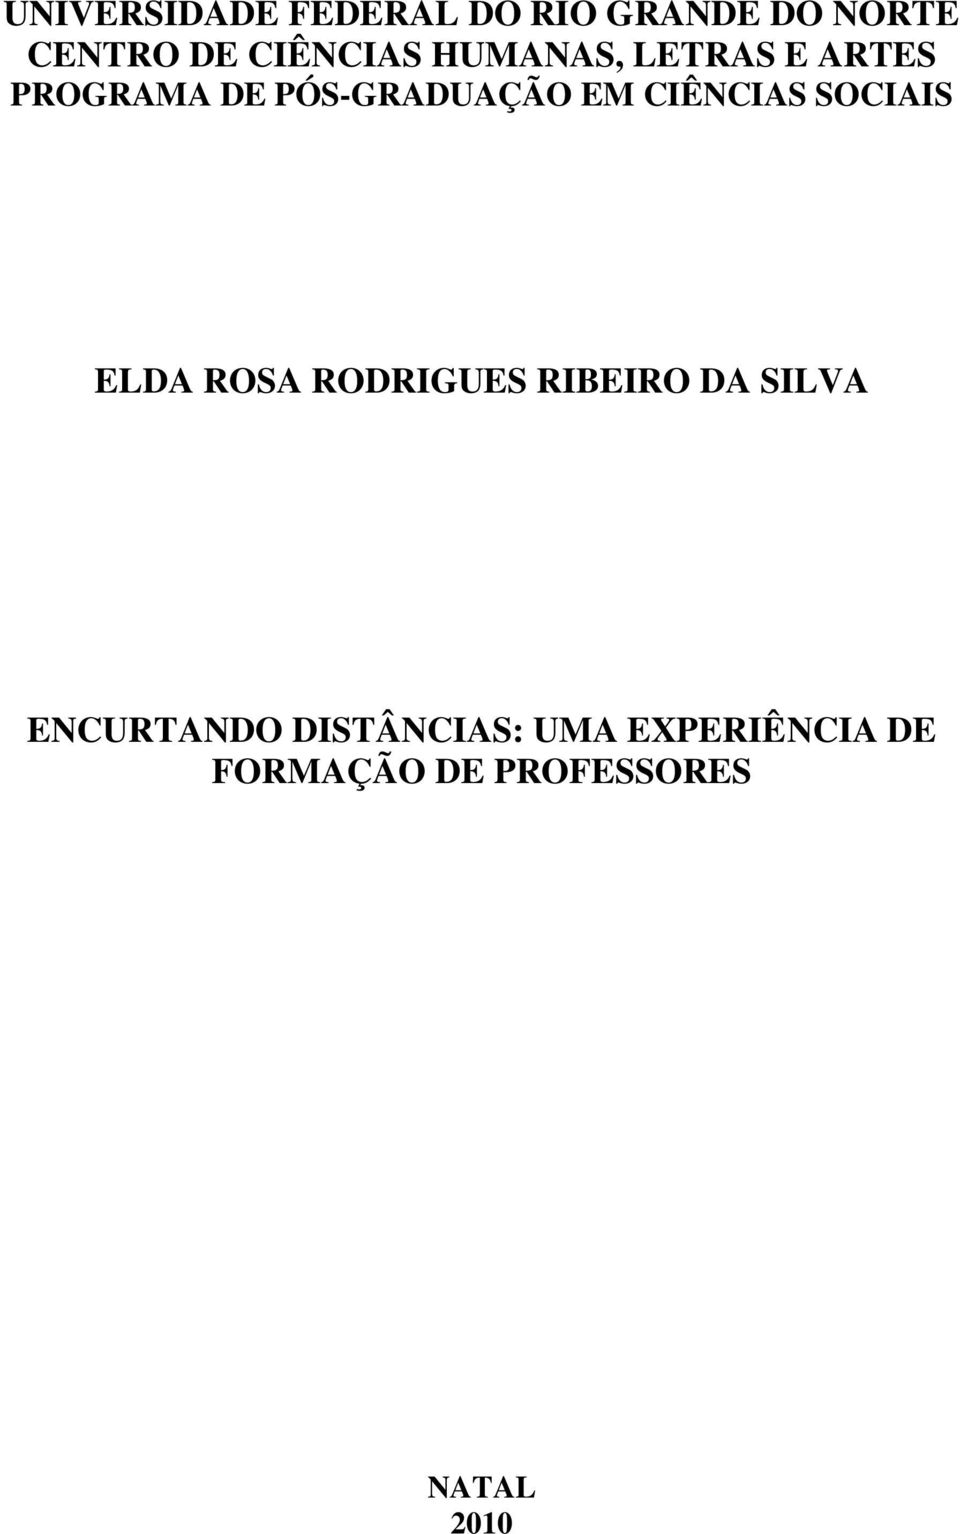 CIÊNCIAS SOCIAIS ELDA ROSA RODRIGUES RIBEIRO DA SILVA